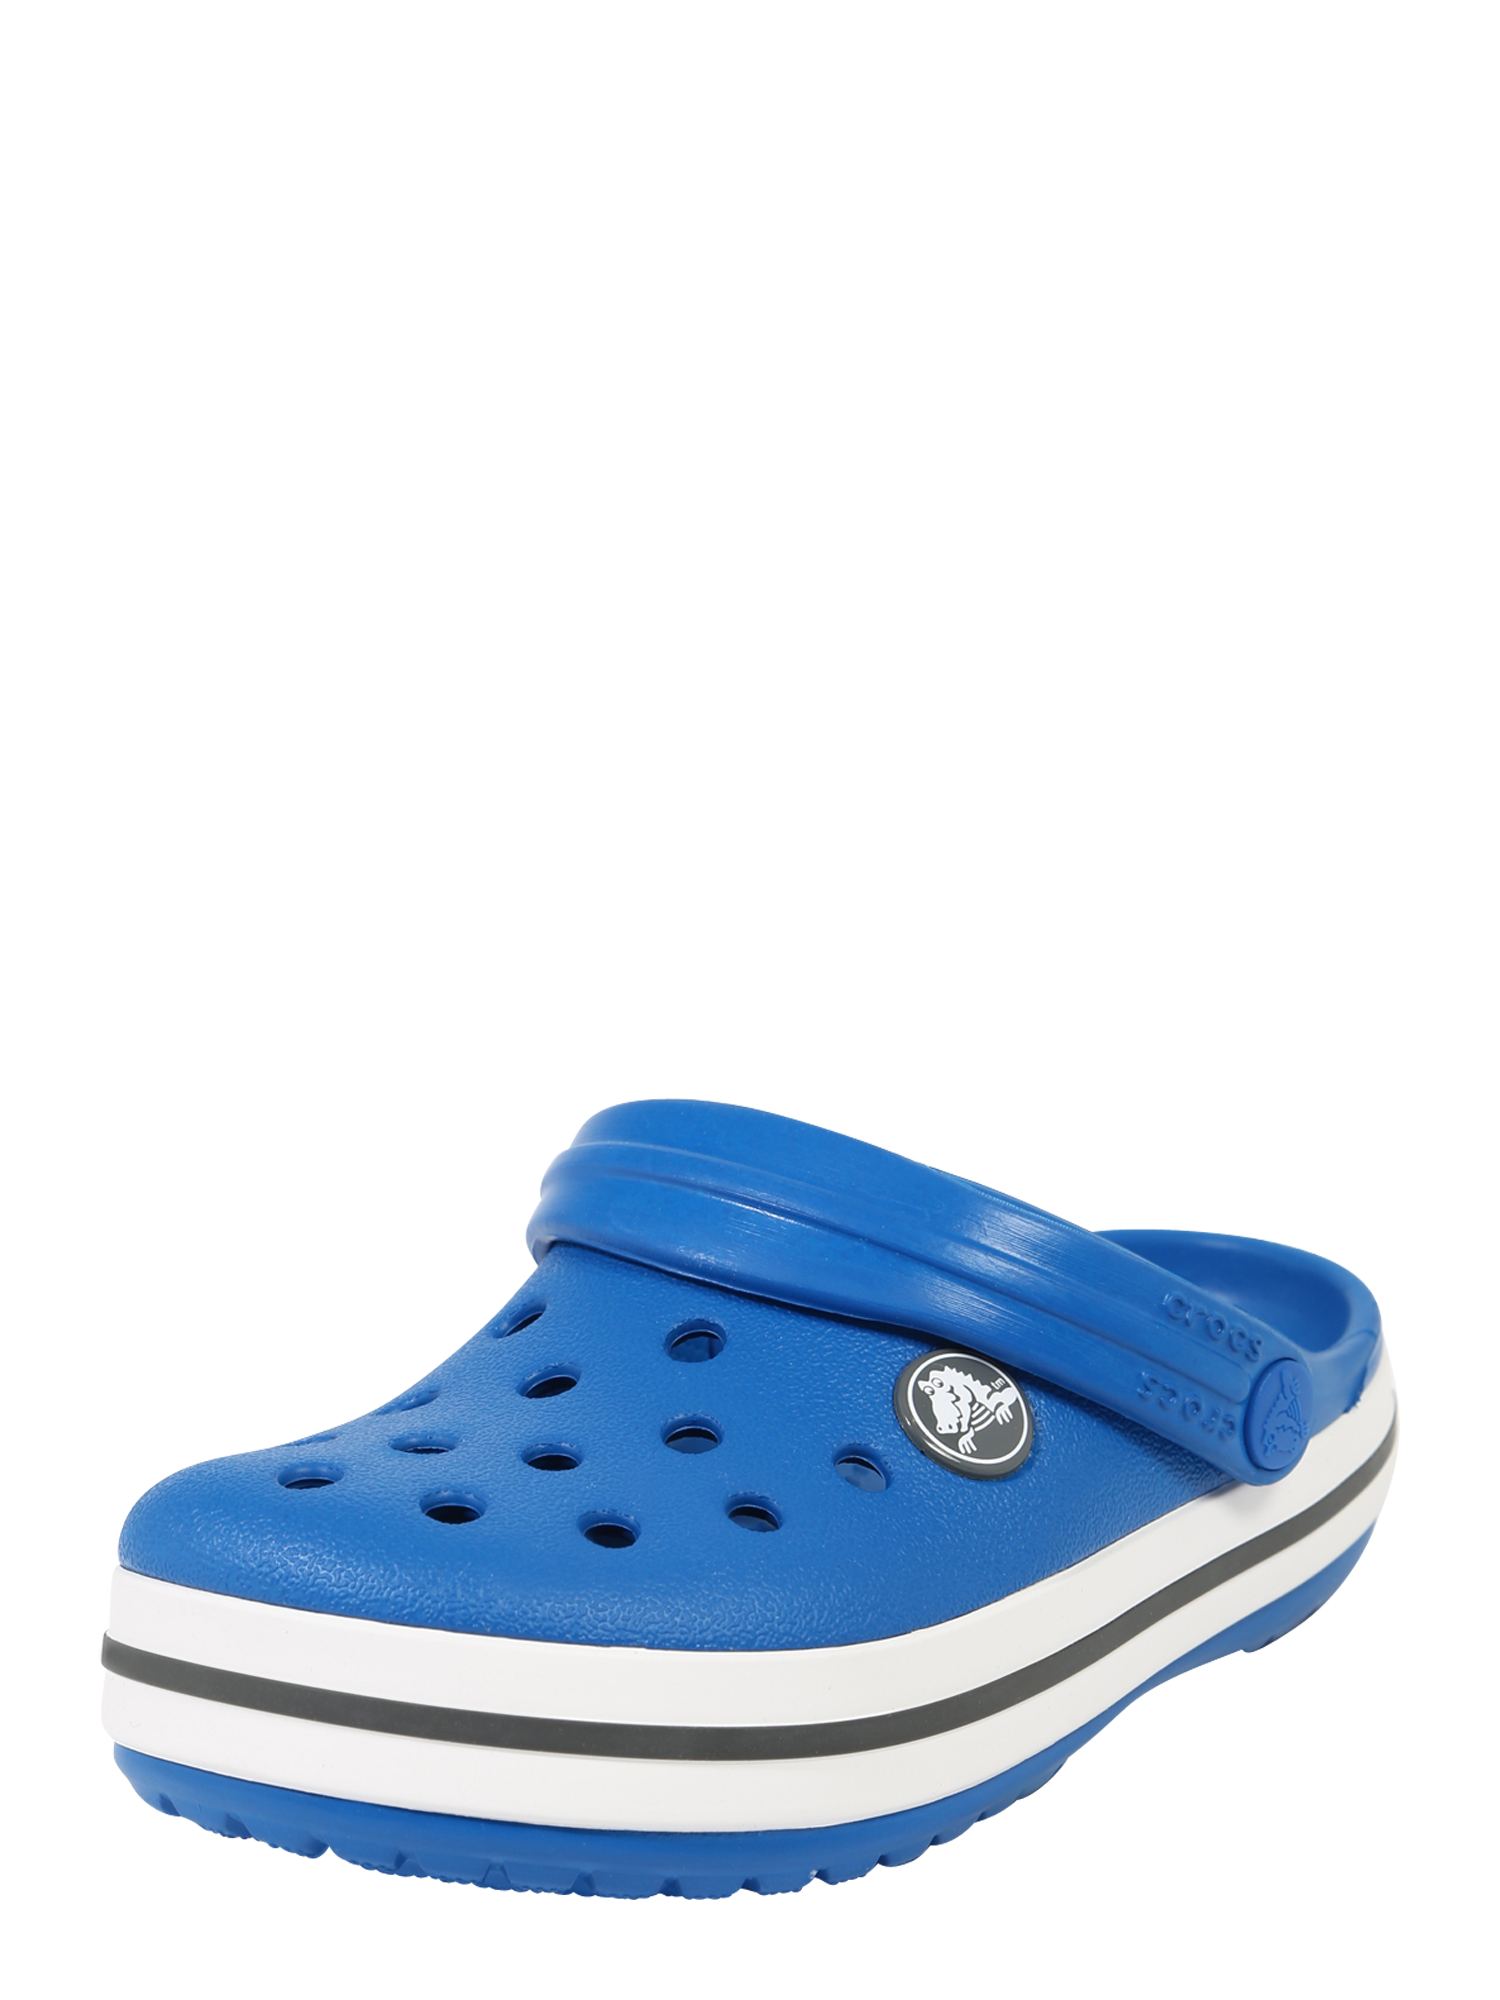 Ragazza (taglie 140-176) Bambini Crocs Sandalo in Blu Cobalto 